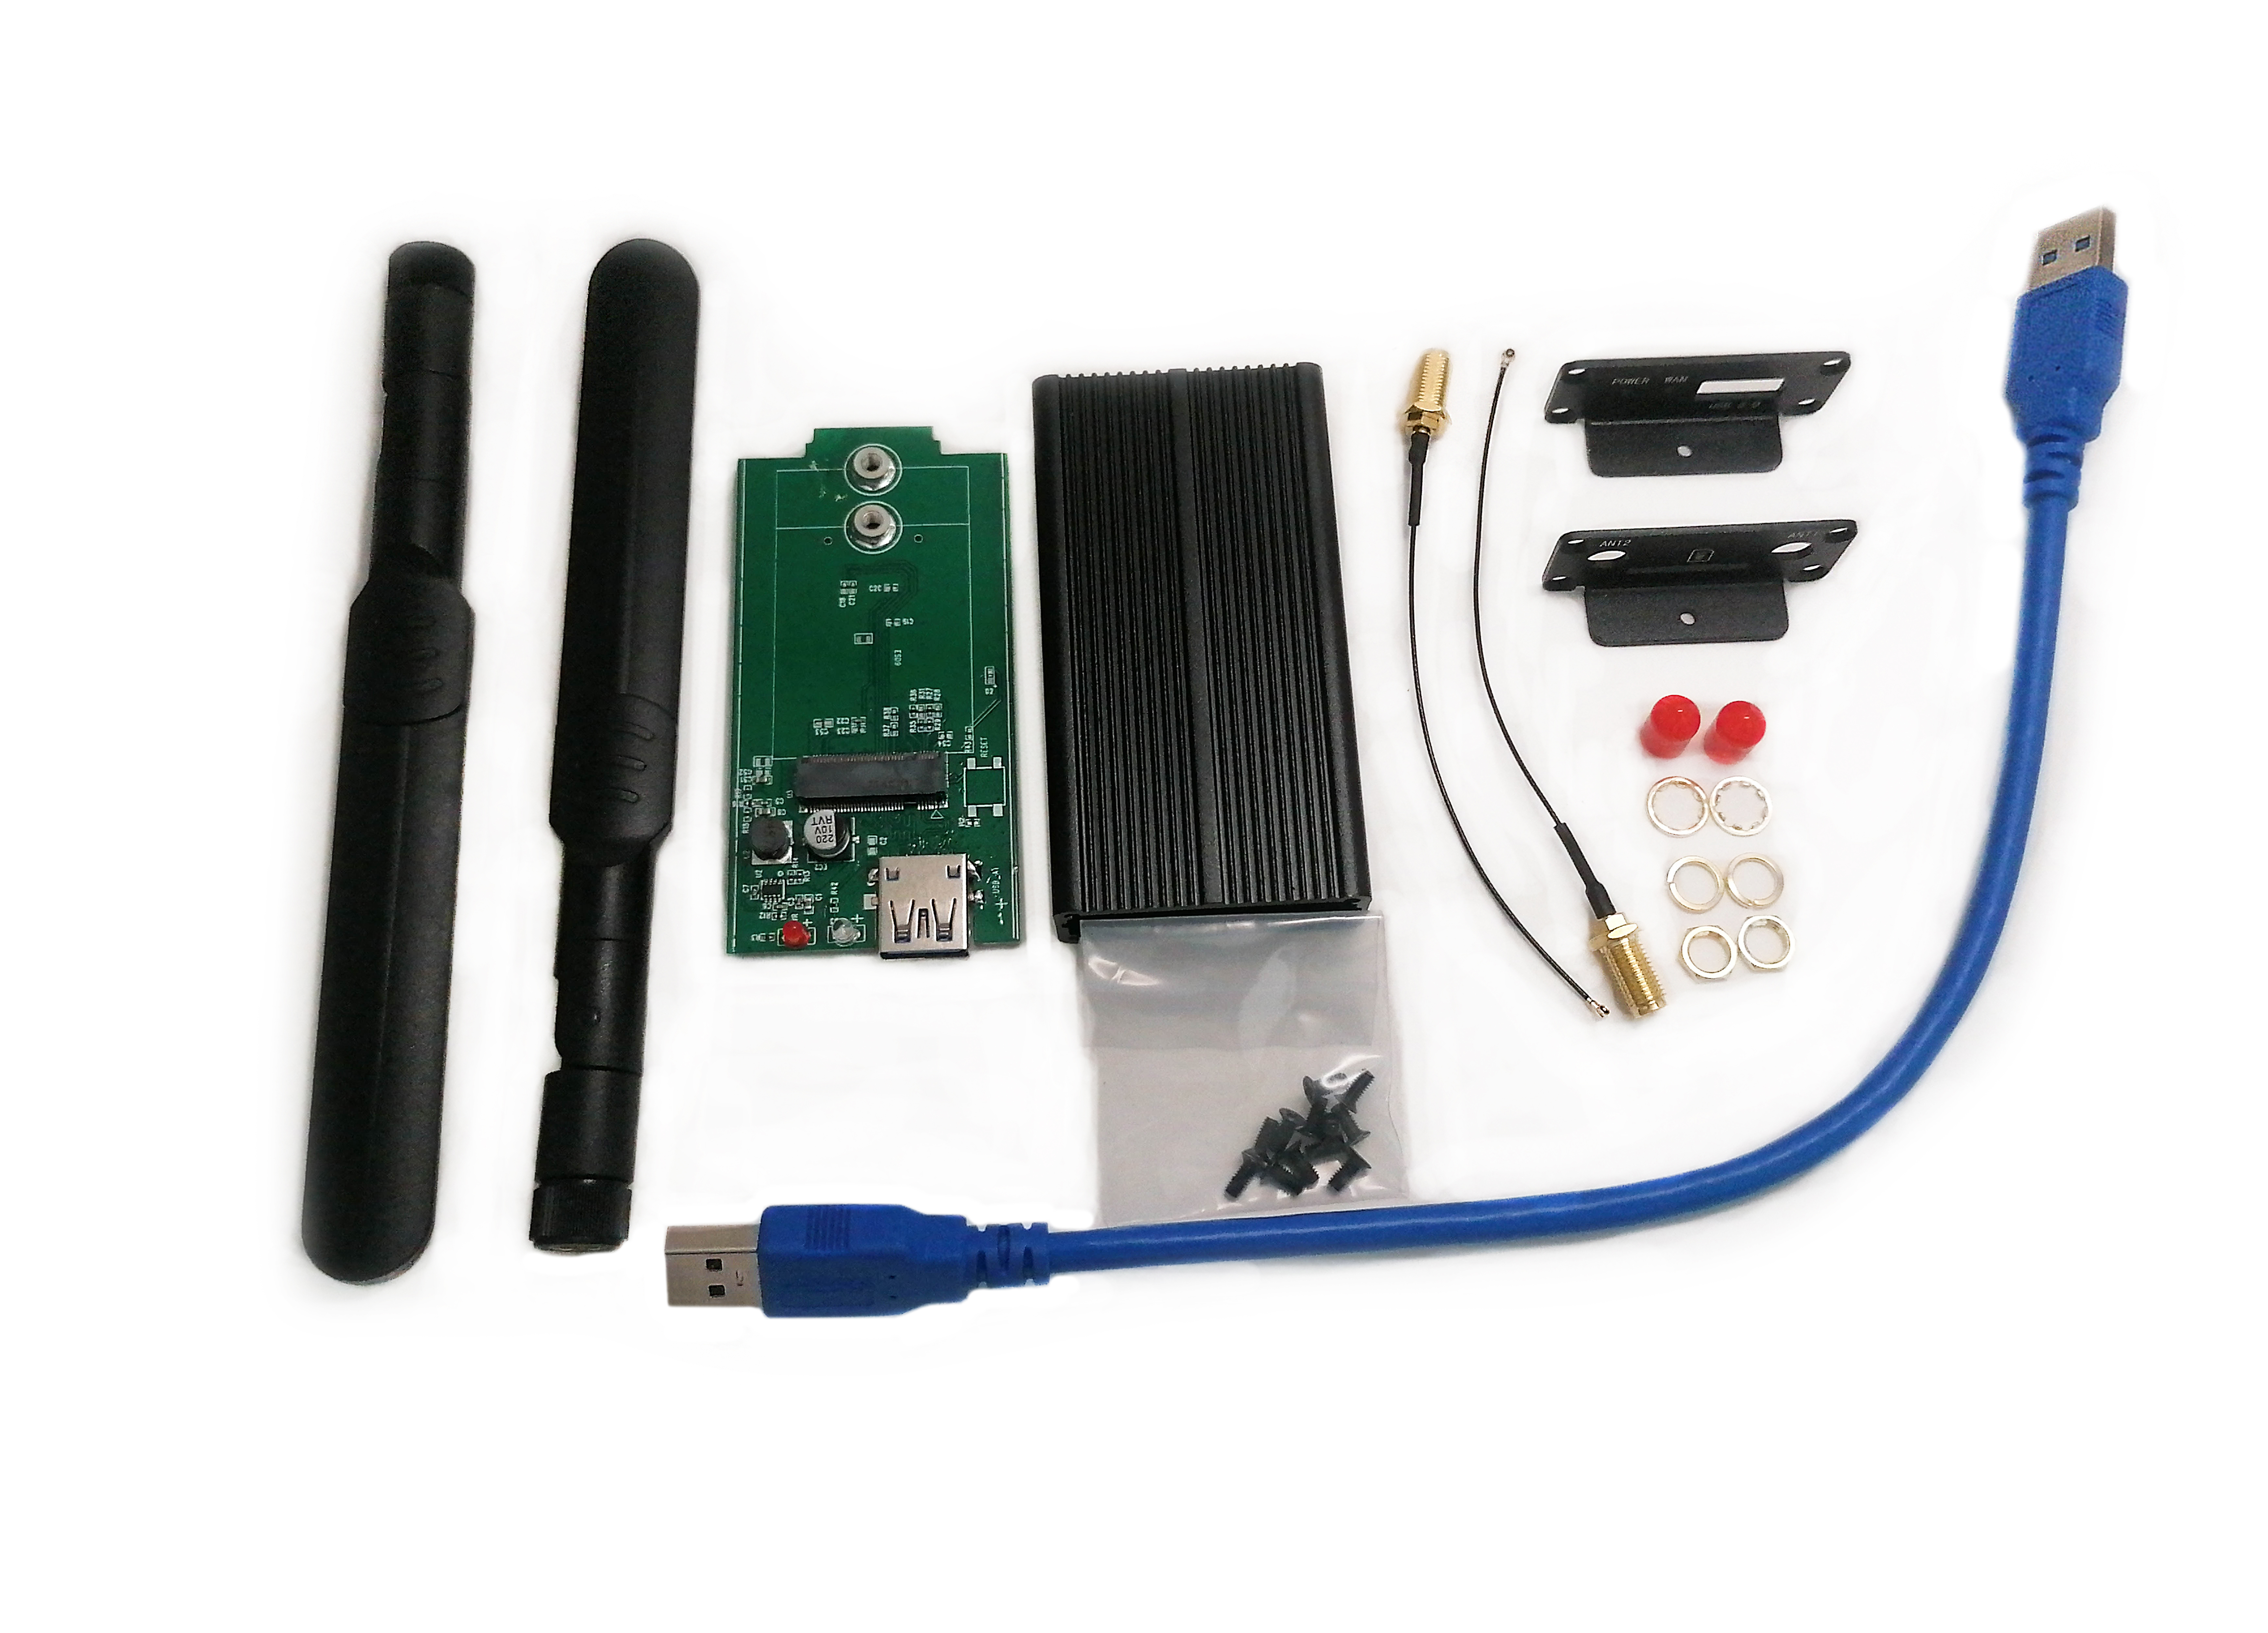 Детальное изображение товара "Адаптер USB 3.0 Box для M.2 модемов" из каталога оборудования Антенна76